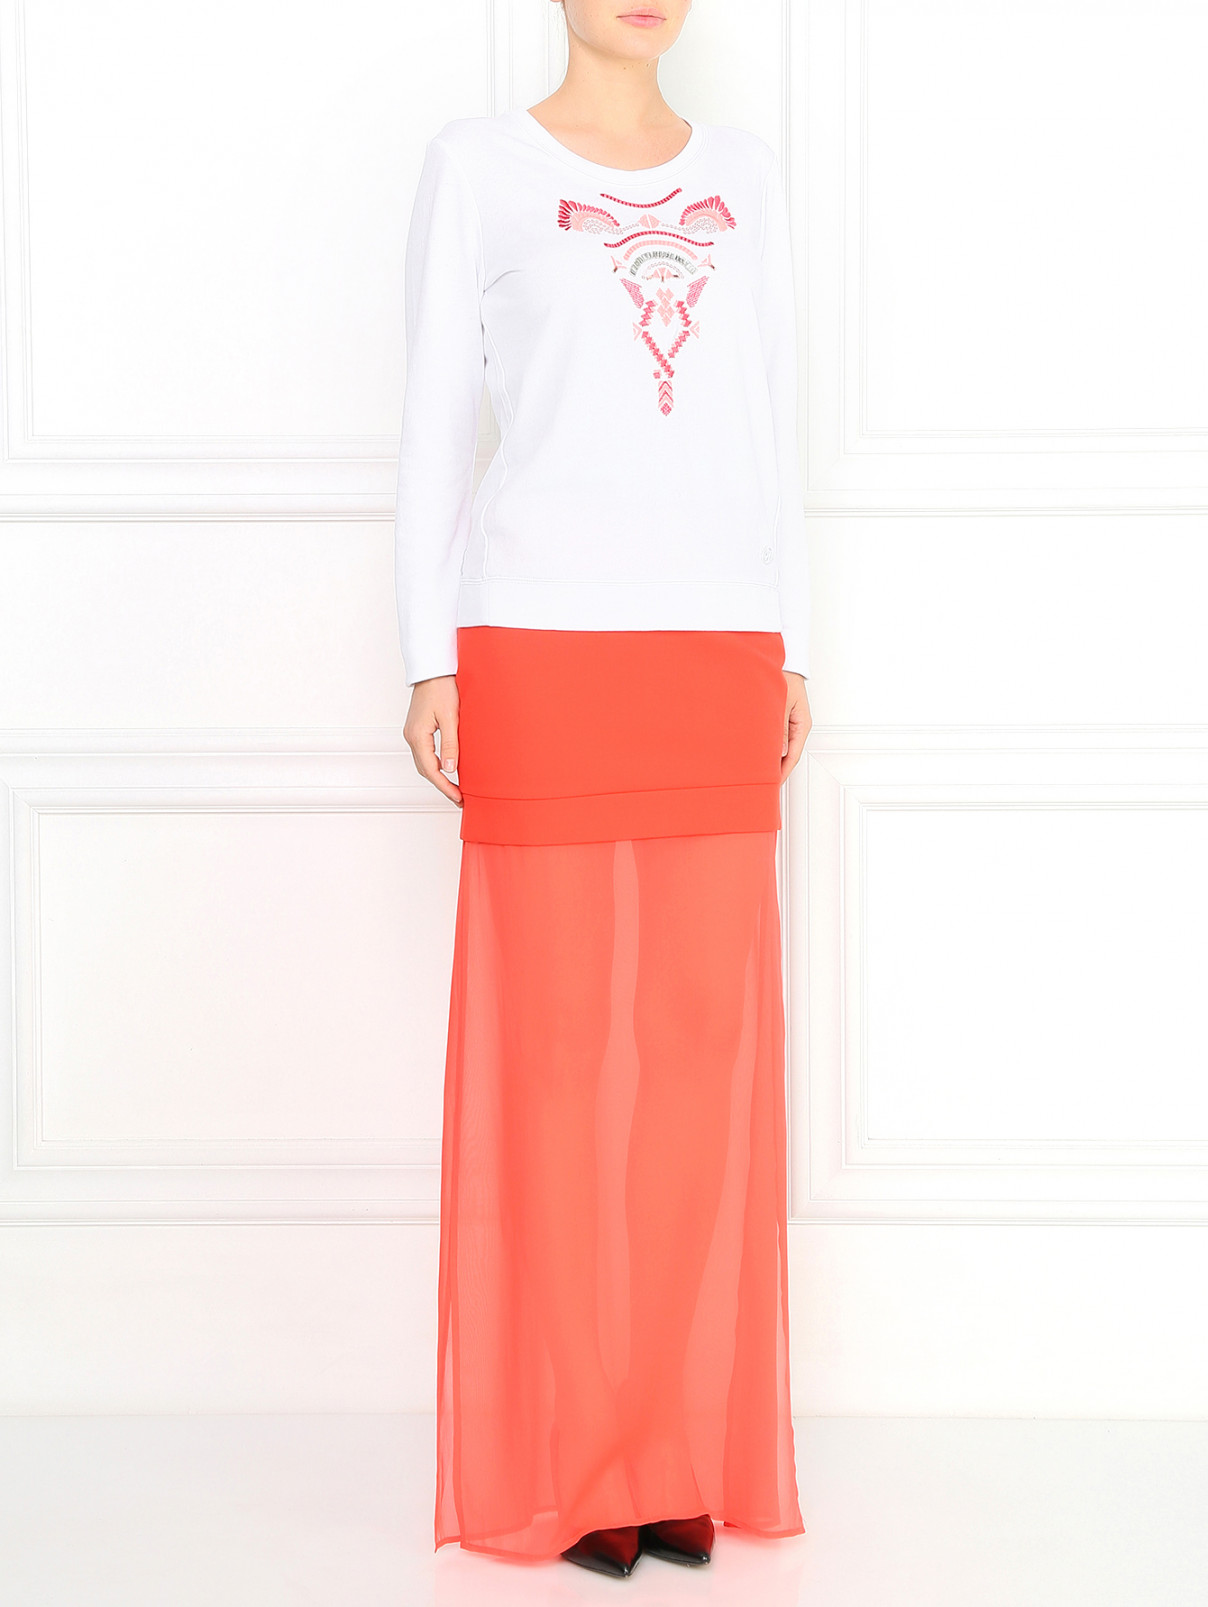 Юбка-макси с шелковой вставкой DKNY  –  Модель Общий вид  – Цвет:  Красный